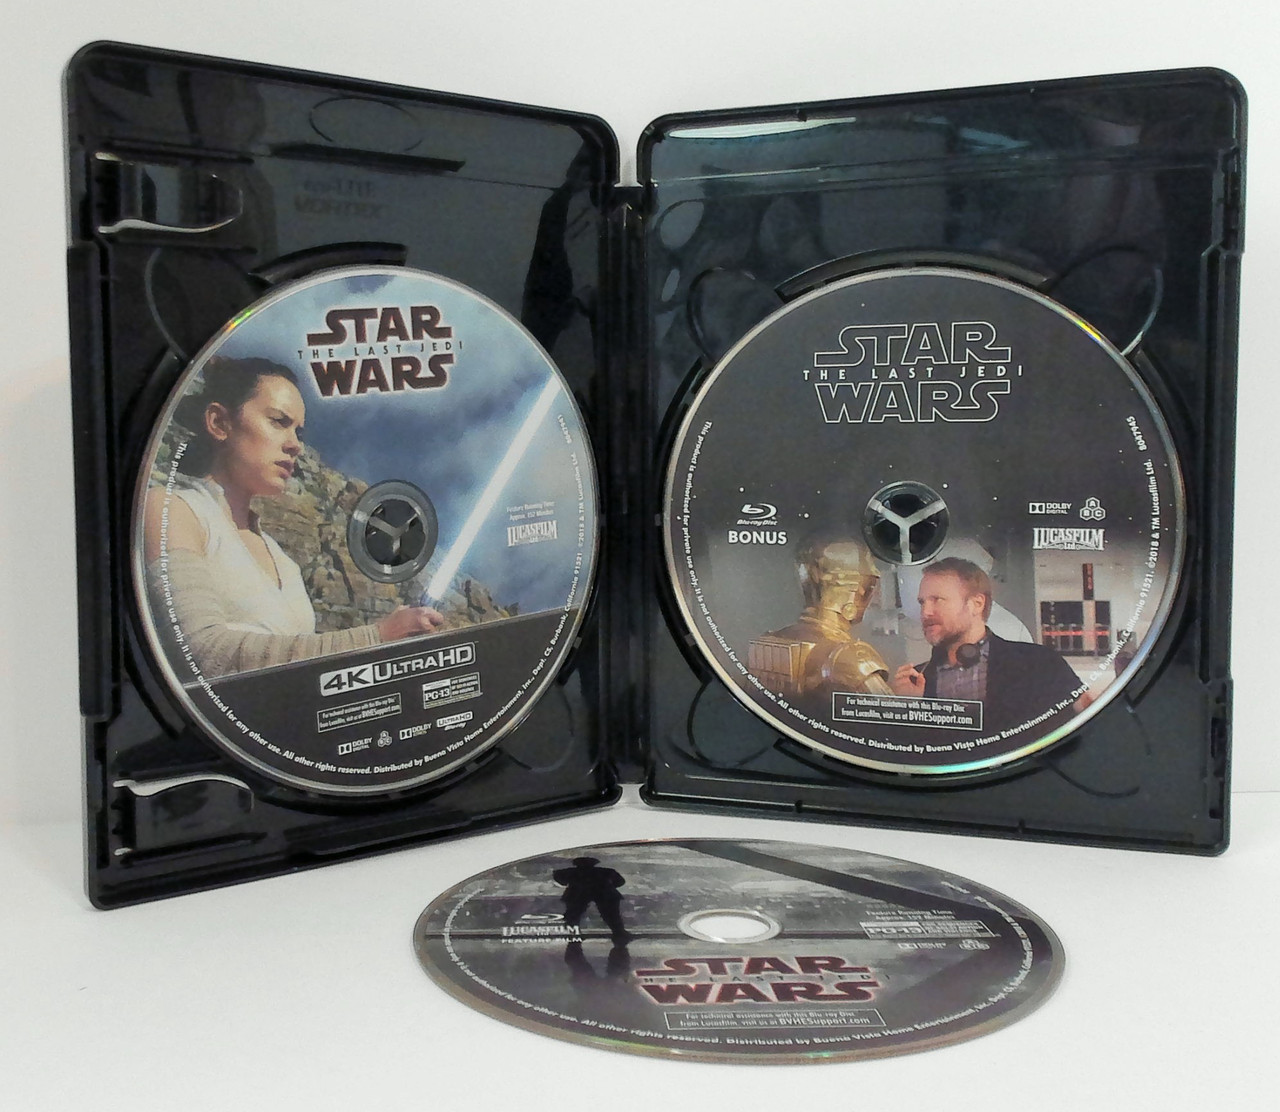 Star Wars: The Last Jedi [4K UHD]